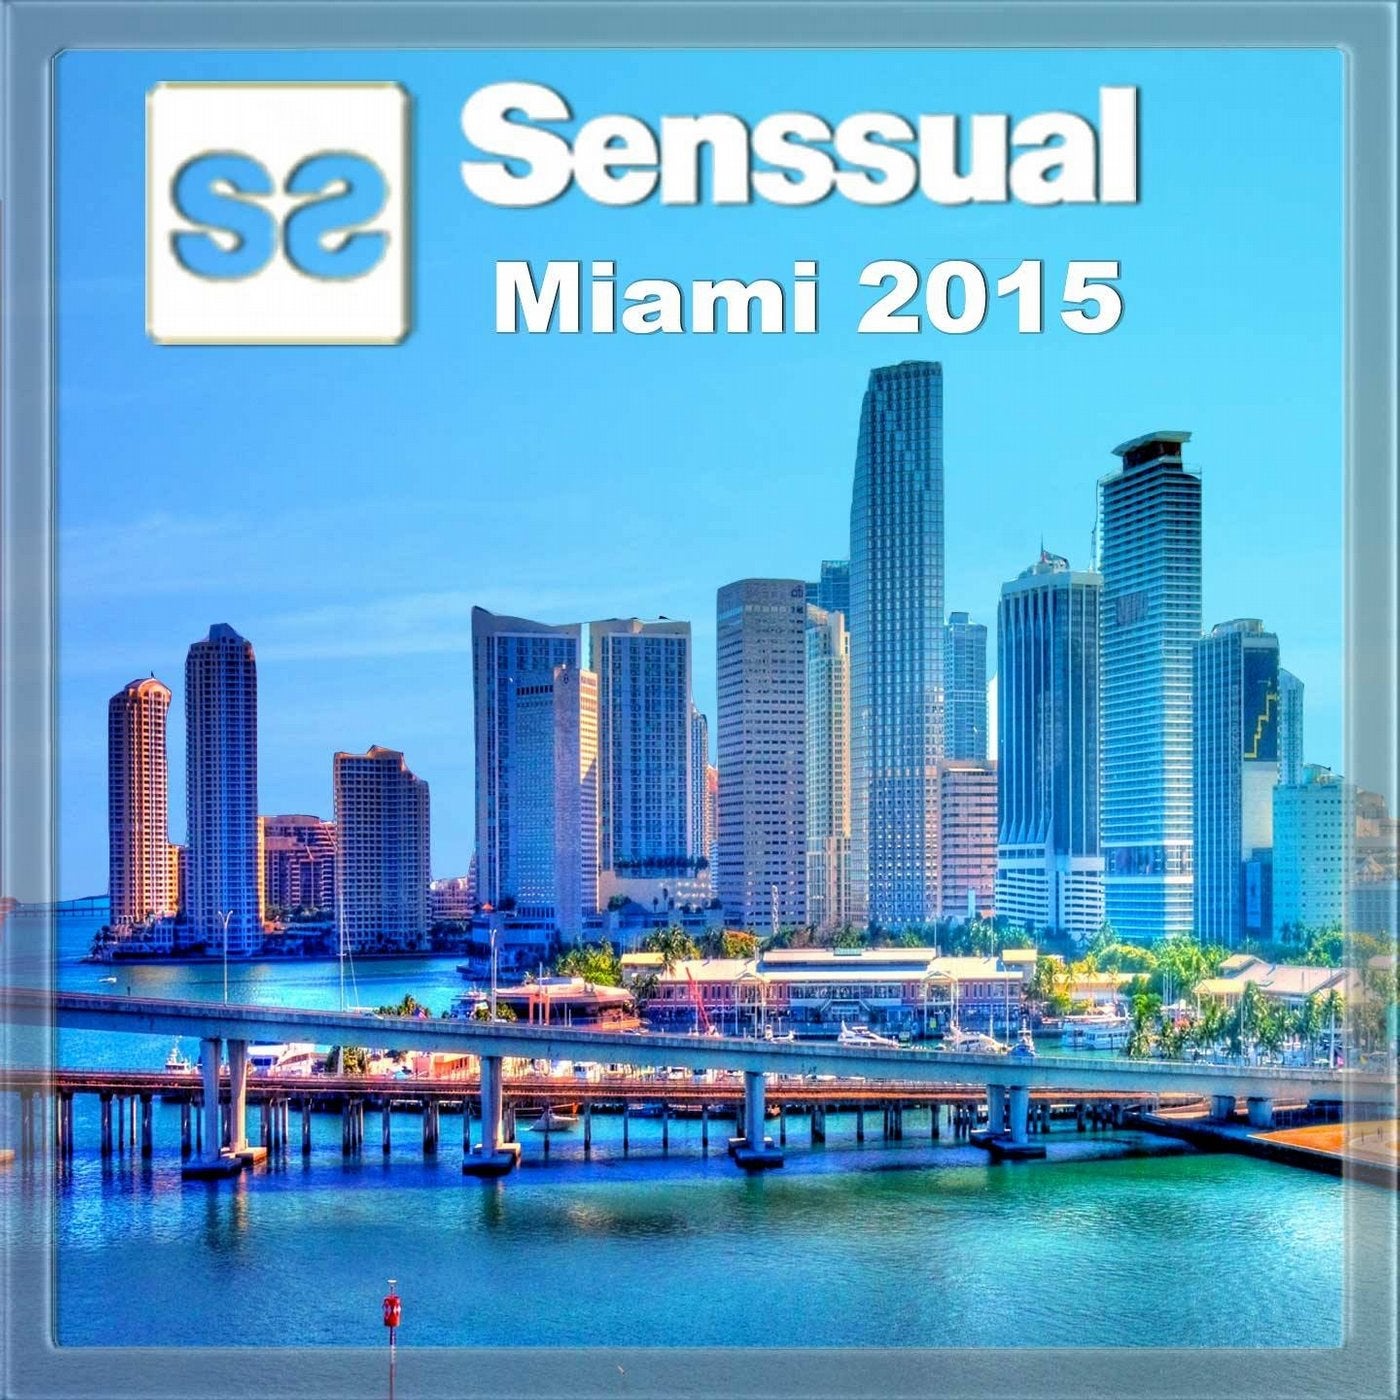 Senssual Miami 2015